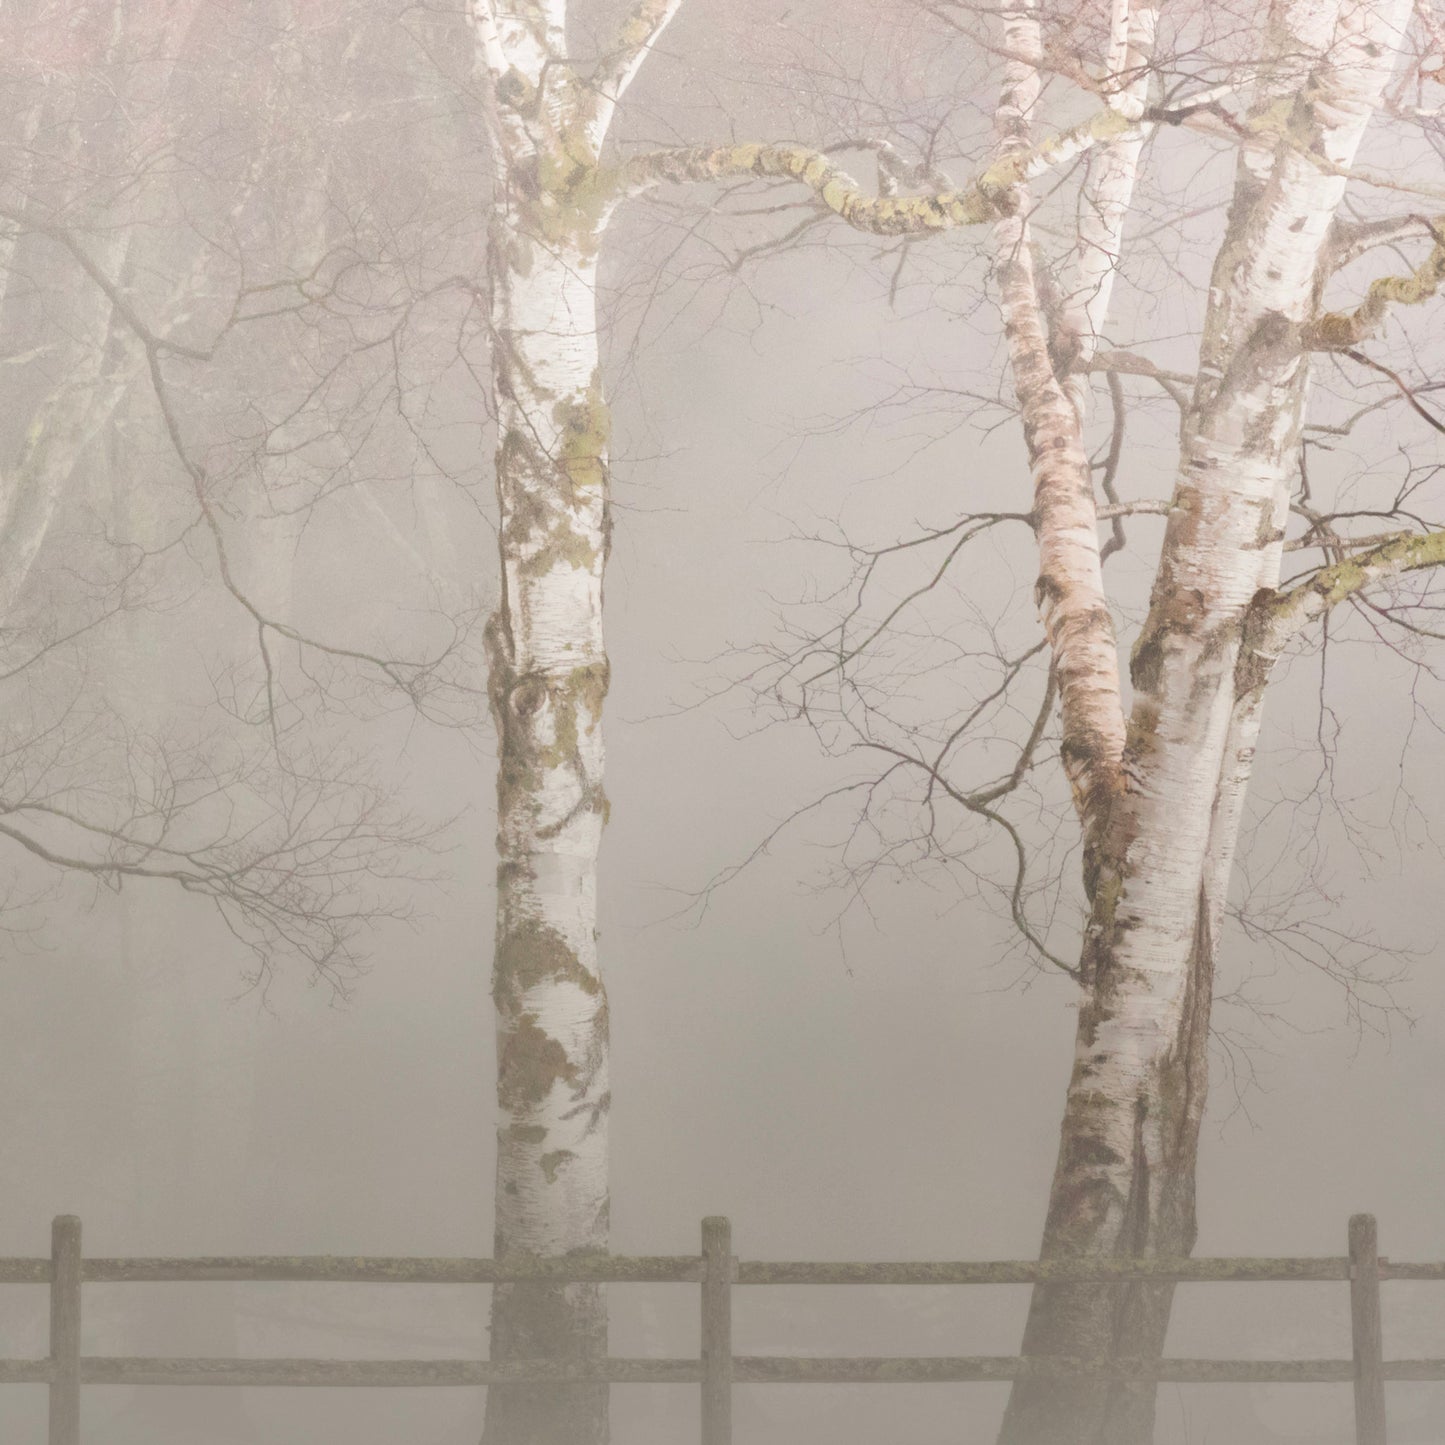 Birches In Fog